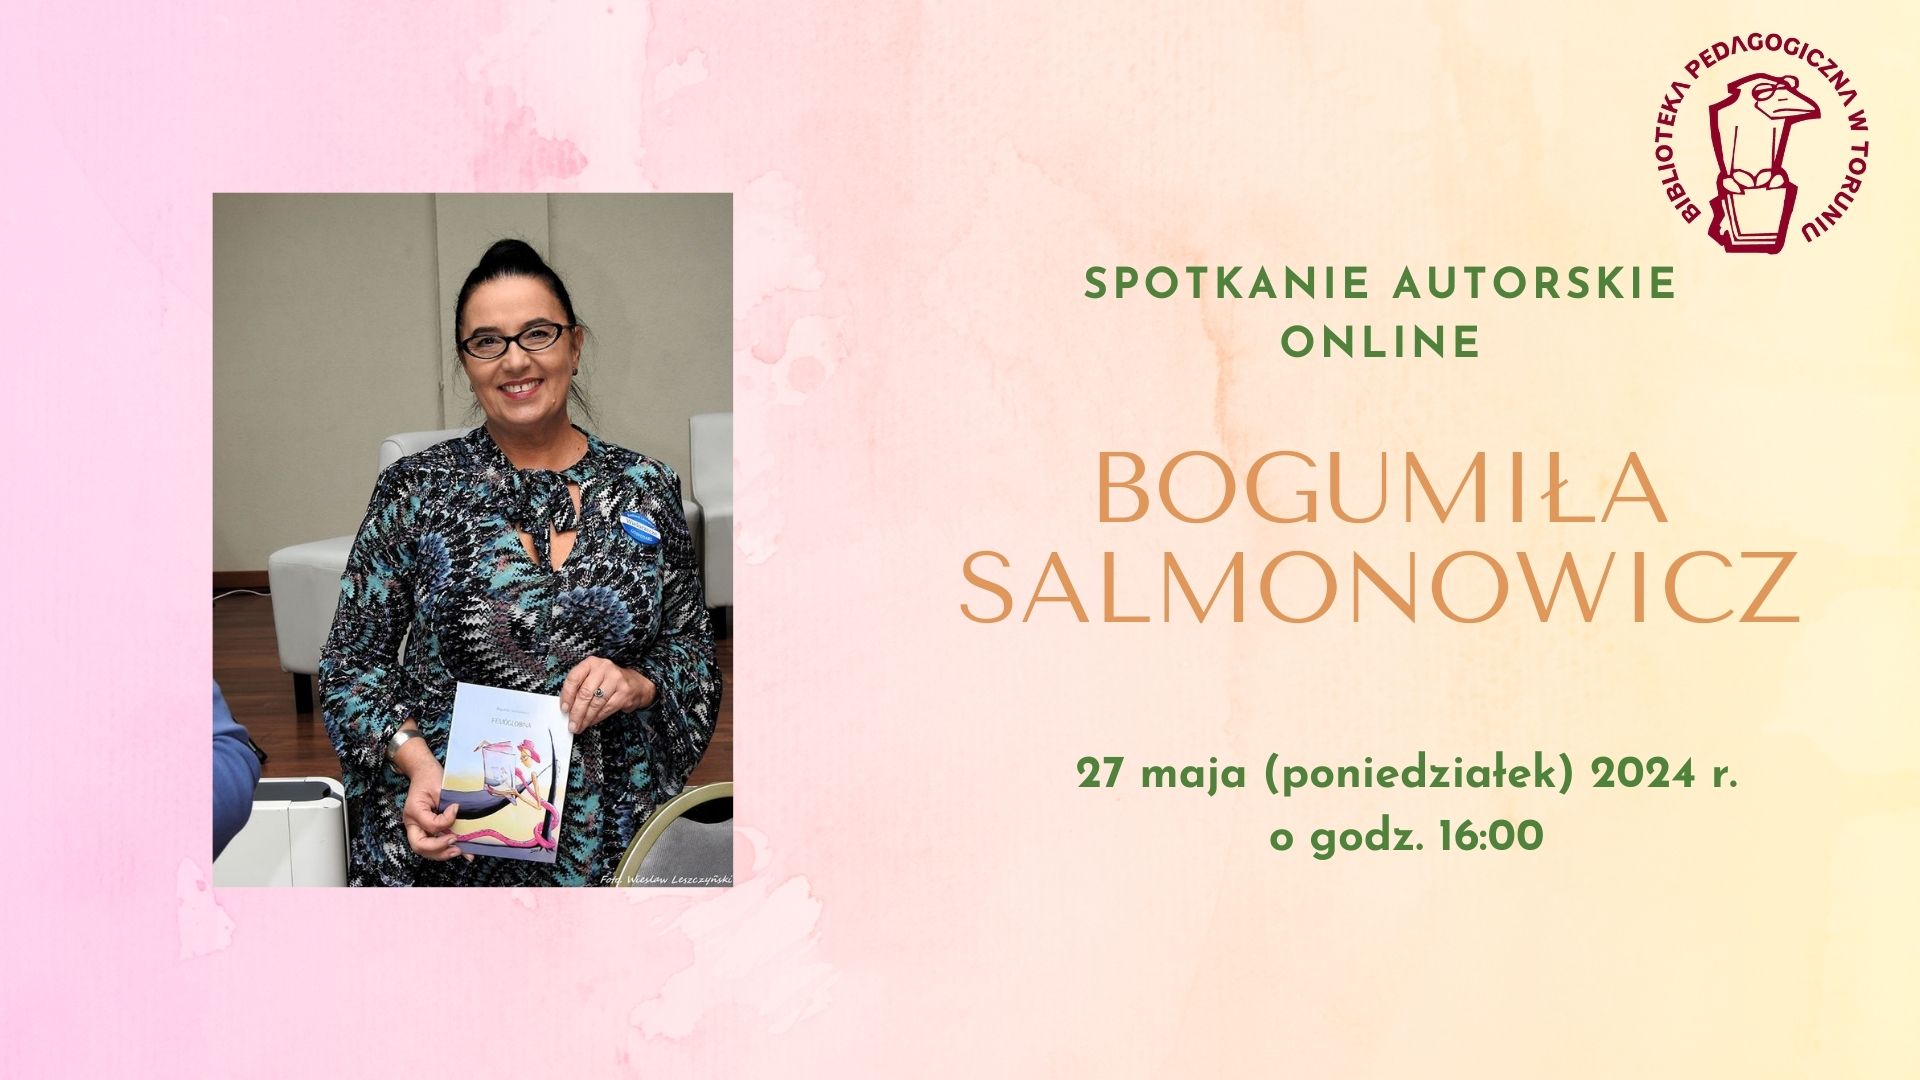 Zaproszenie na spotkanie autorskie online z Bogumiłą Salmonowicz, które odbędzie się 27 maja 2024 r. o godzinie 16:00. Po lewej stronie zdjęcie ciemnowłosej kobiety w okularach, trzymającej książkę.